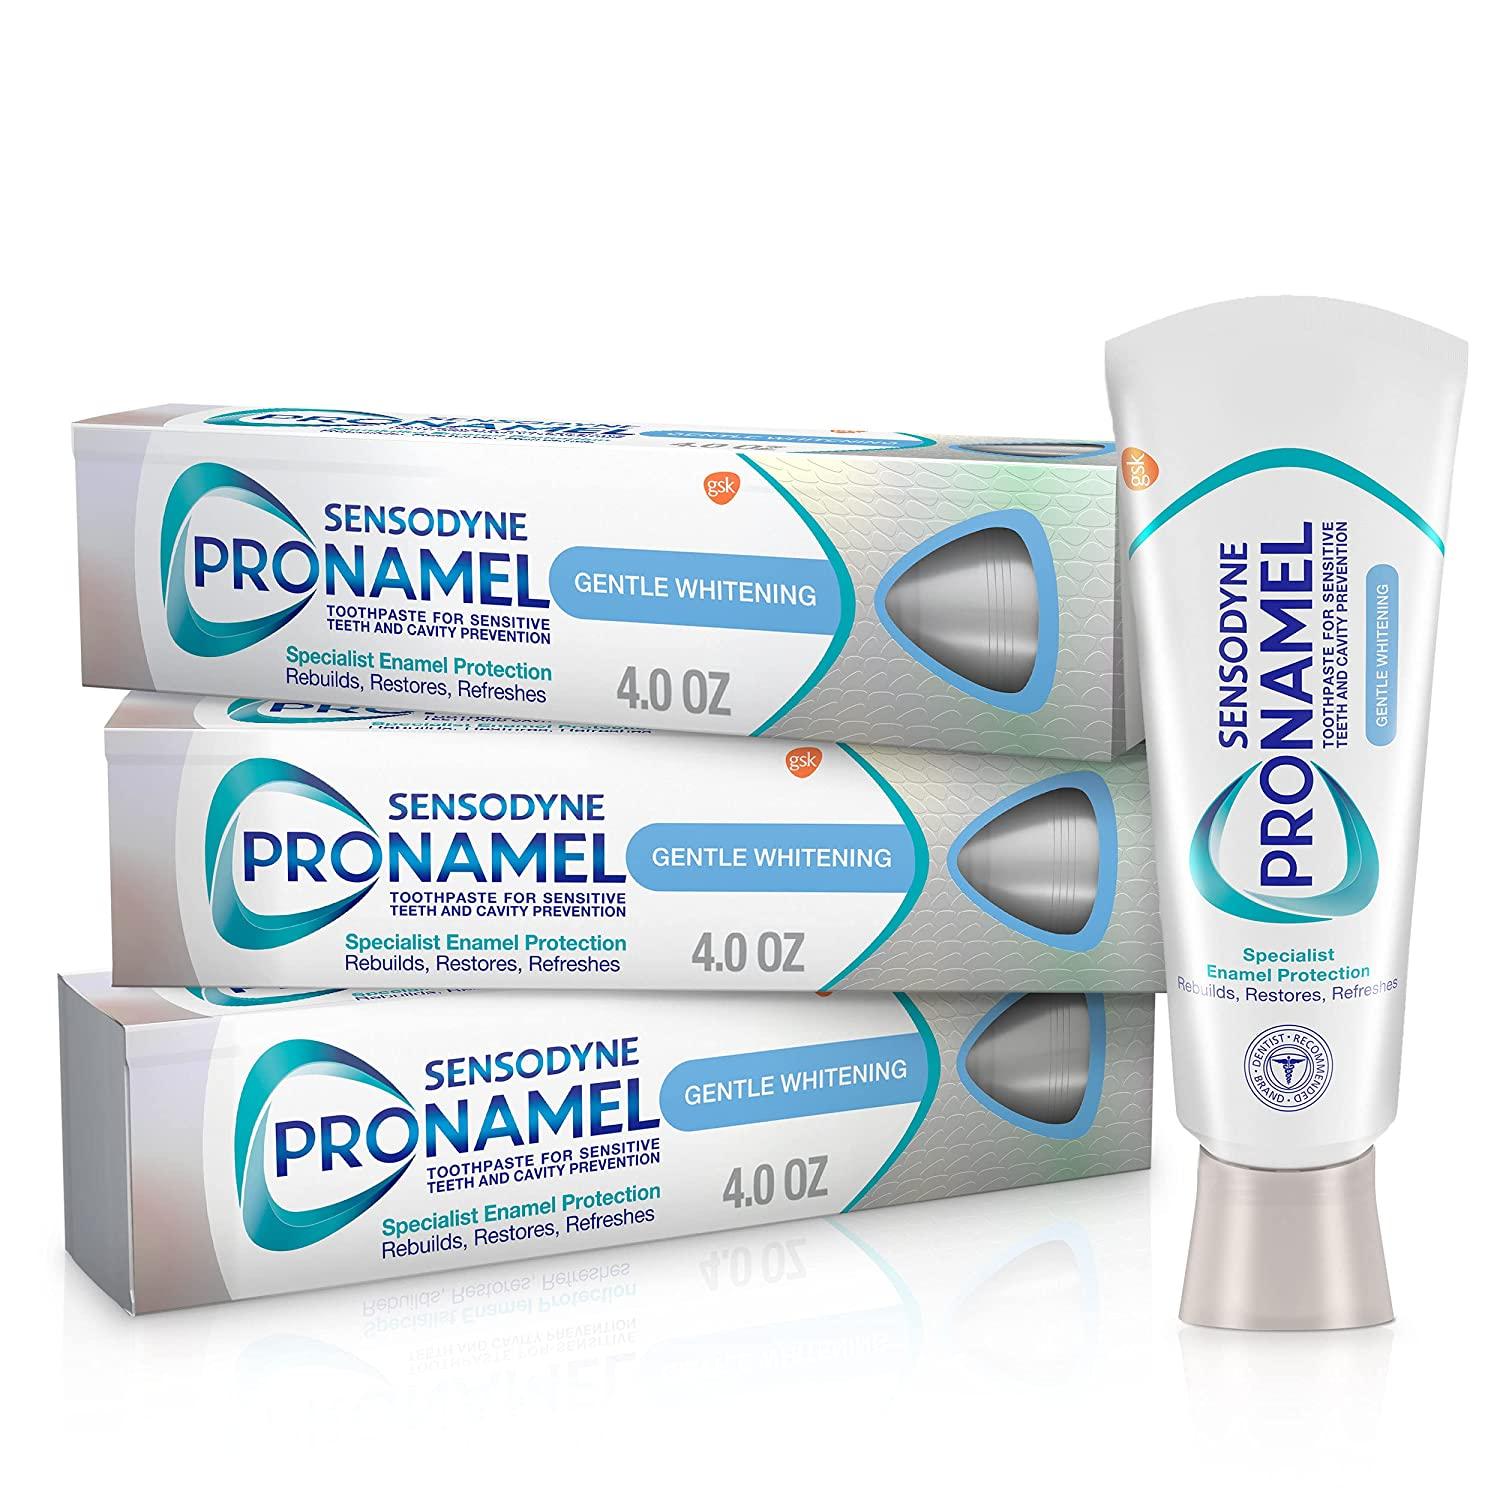 Sensodyne Pronamel Whitening Enamel Sensitive Toothpaste 6 Pack for $21.89 Shipped